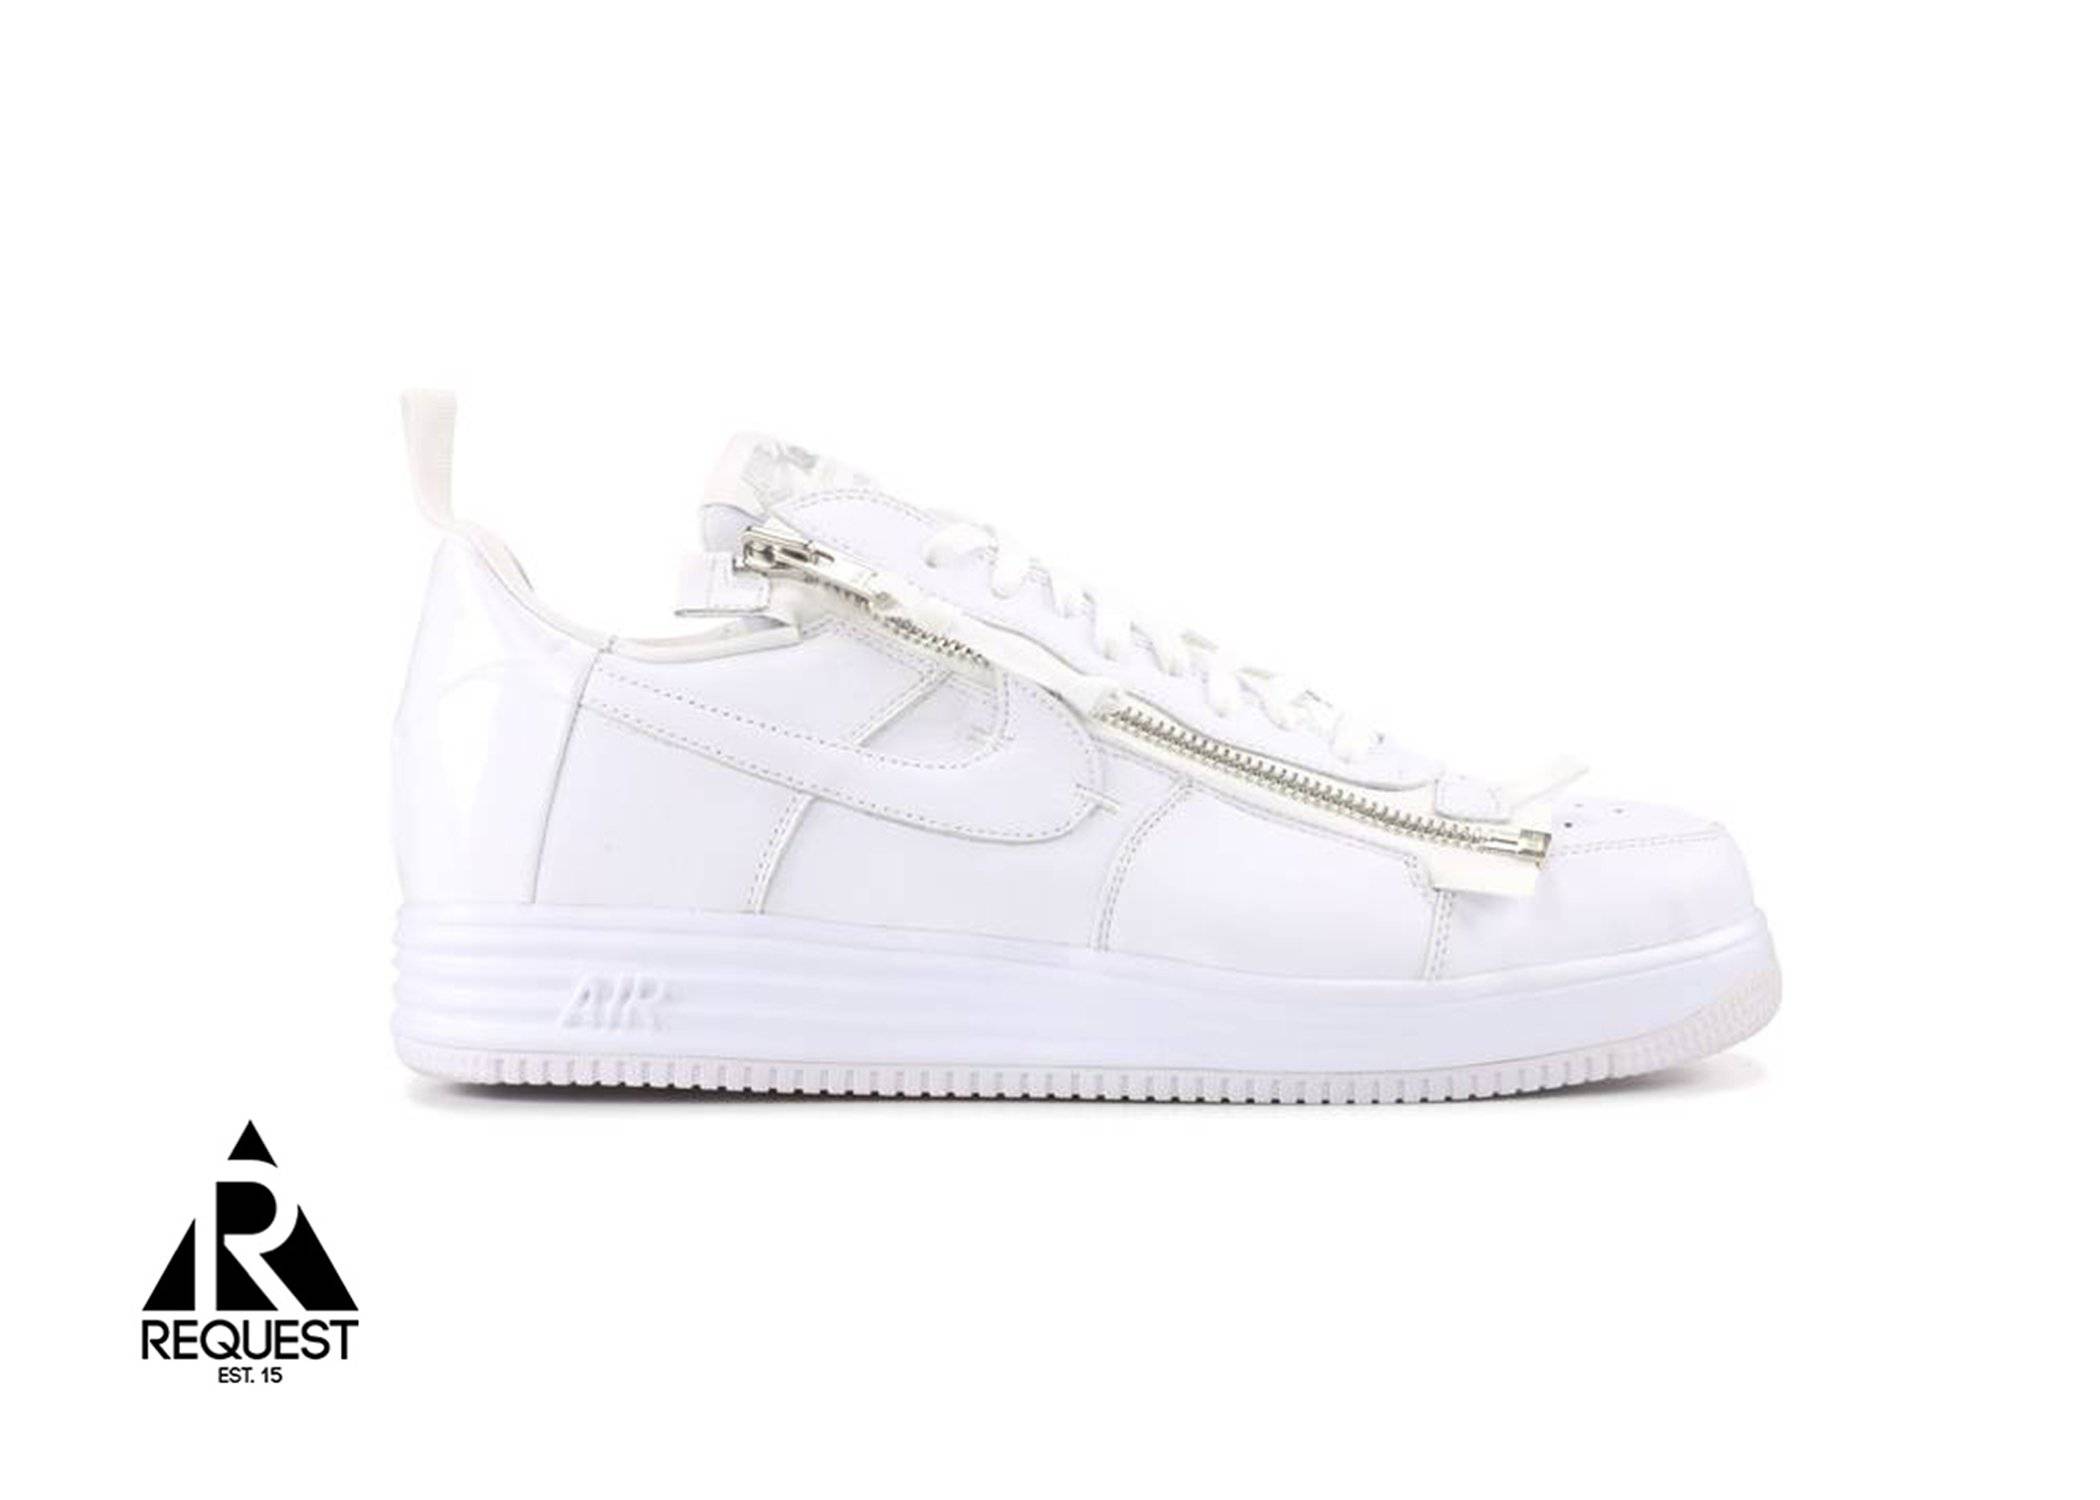 Nike Acronym Lunar AF1 “White”